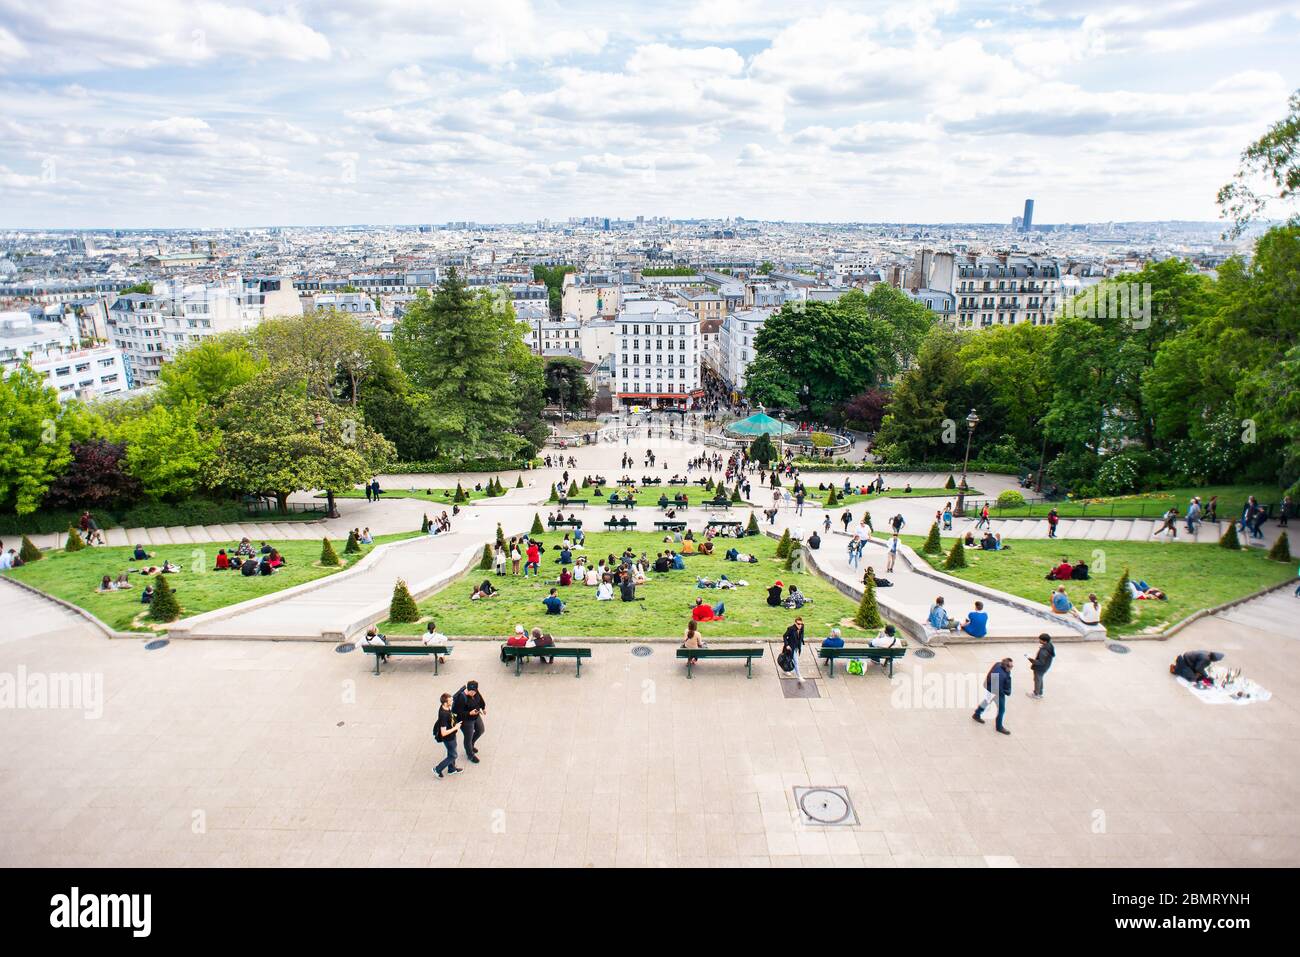 Parigi. Francia - 15 maggio 2019: Paesaggio urbano di Parigi. Vertice della Butte Montmartre a Parigi. Francia. Turisti a piedi. Foto Stock